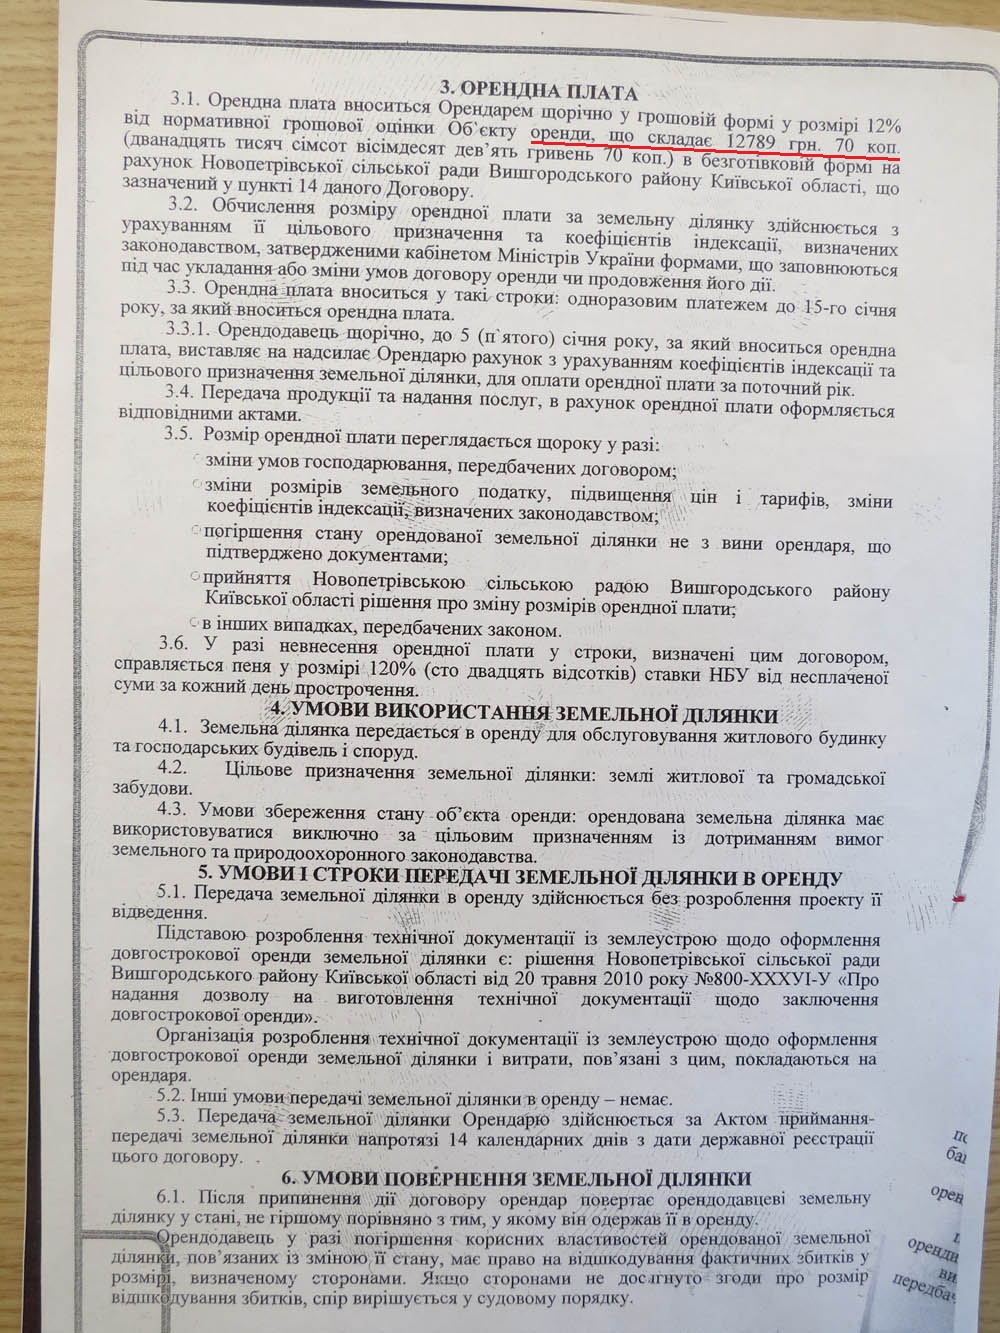 Как для Януковича земли в Новых Петровцах собирались (+документы)